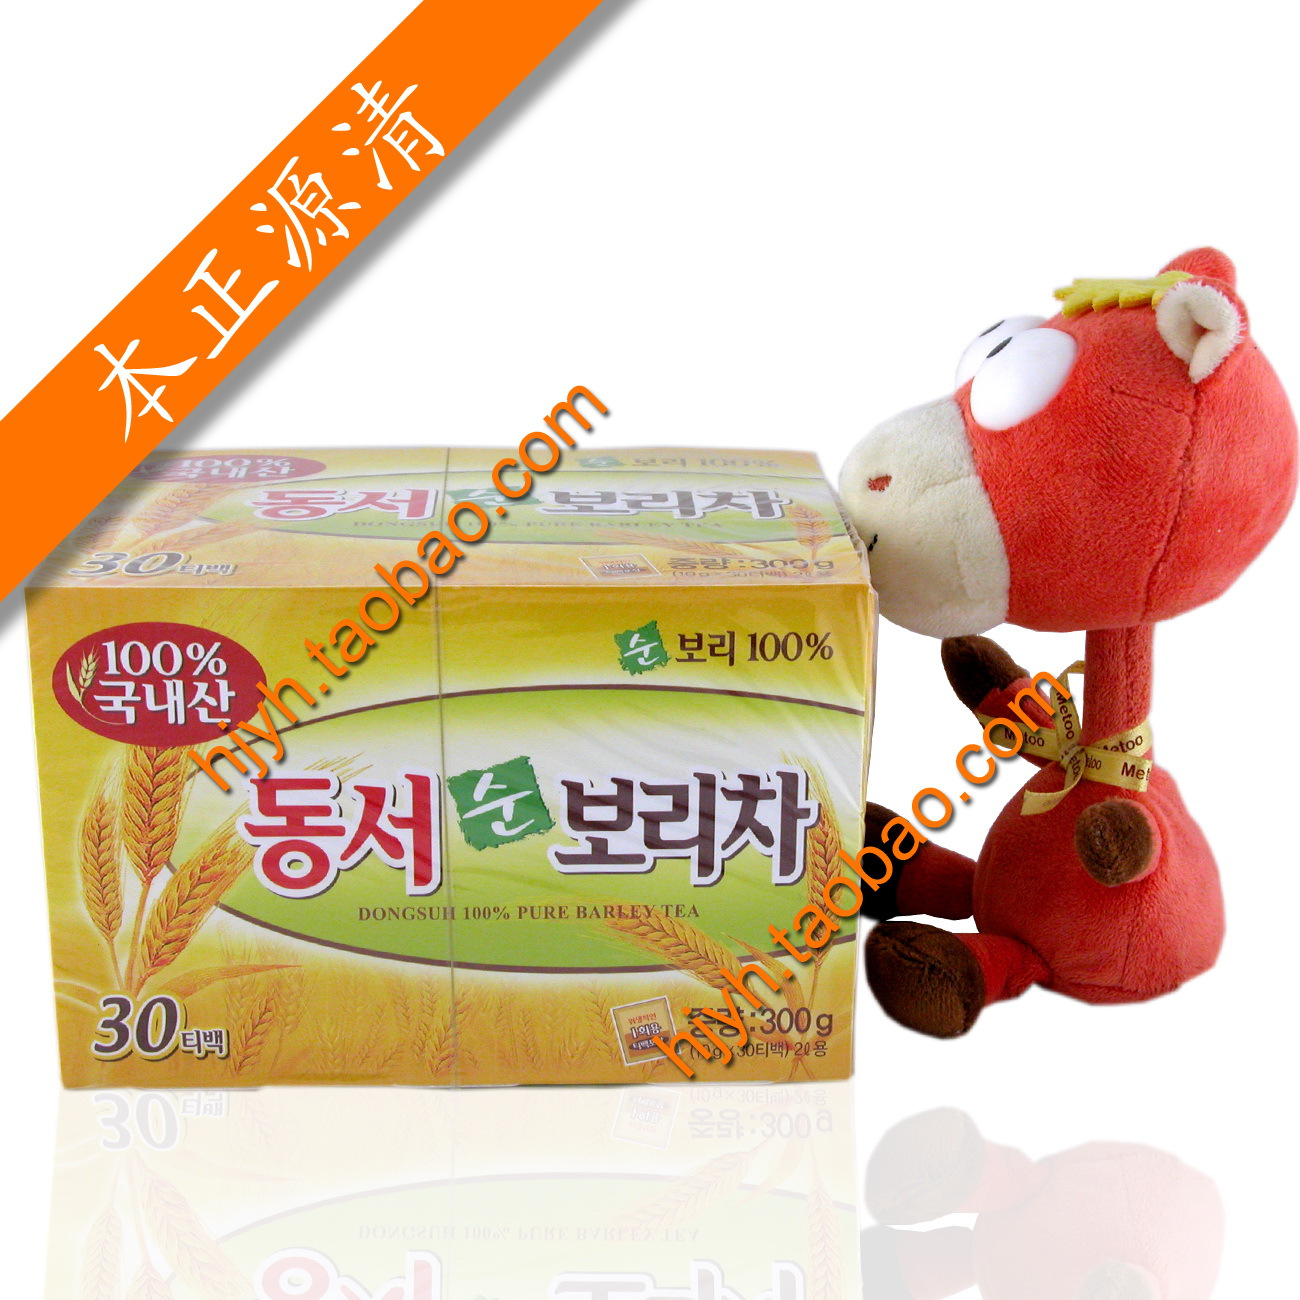 专-韩国东西牌大麦茶 毛重:0.4kg